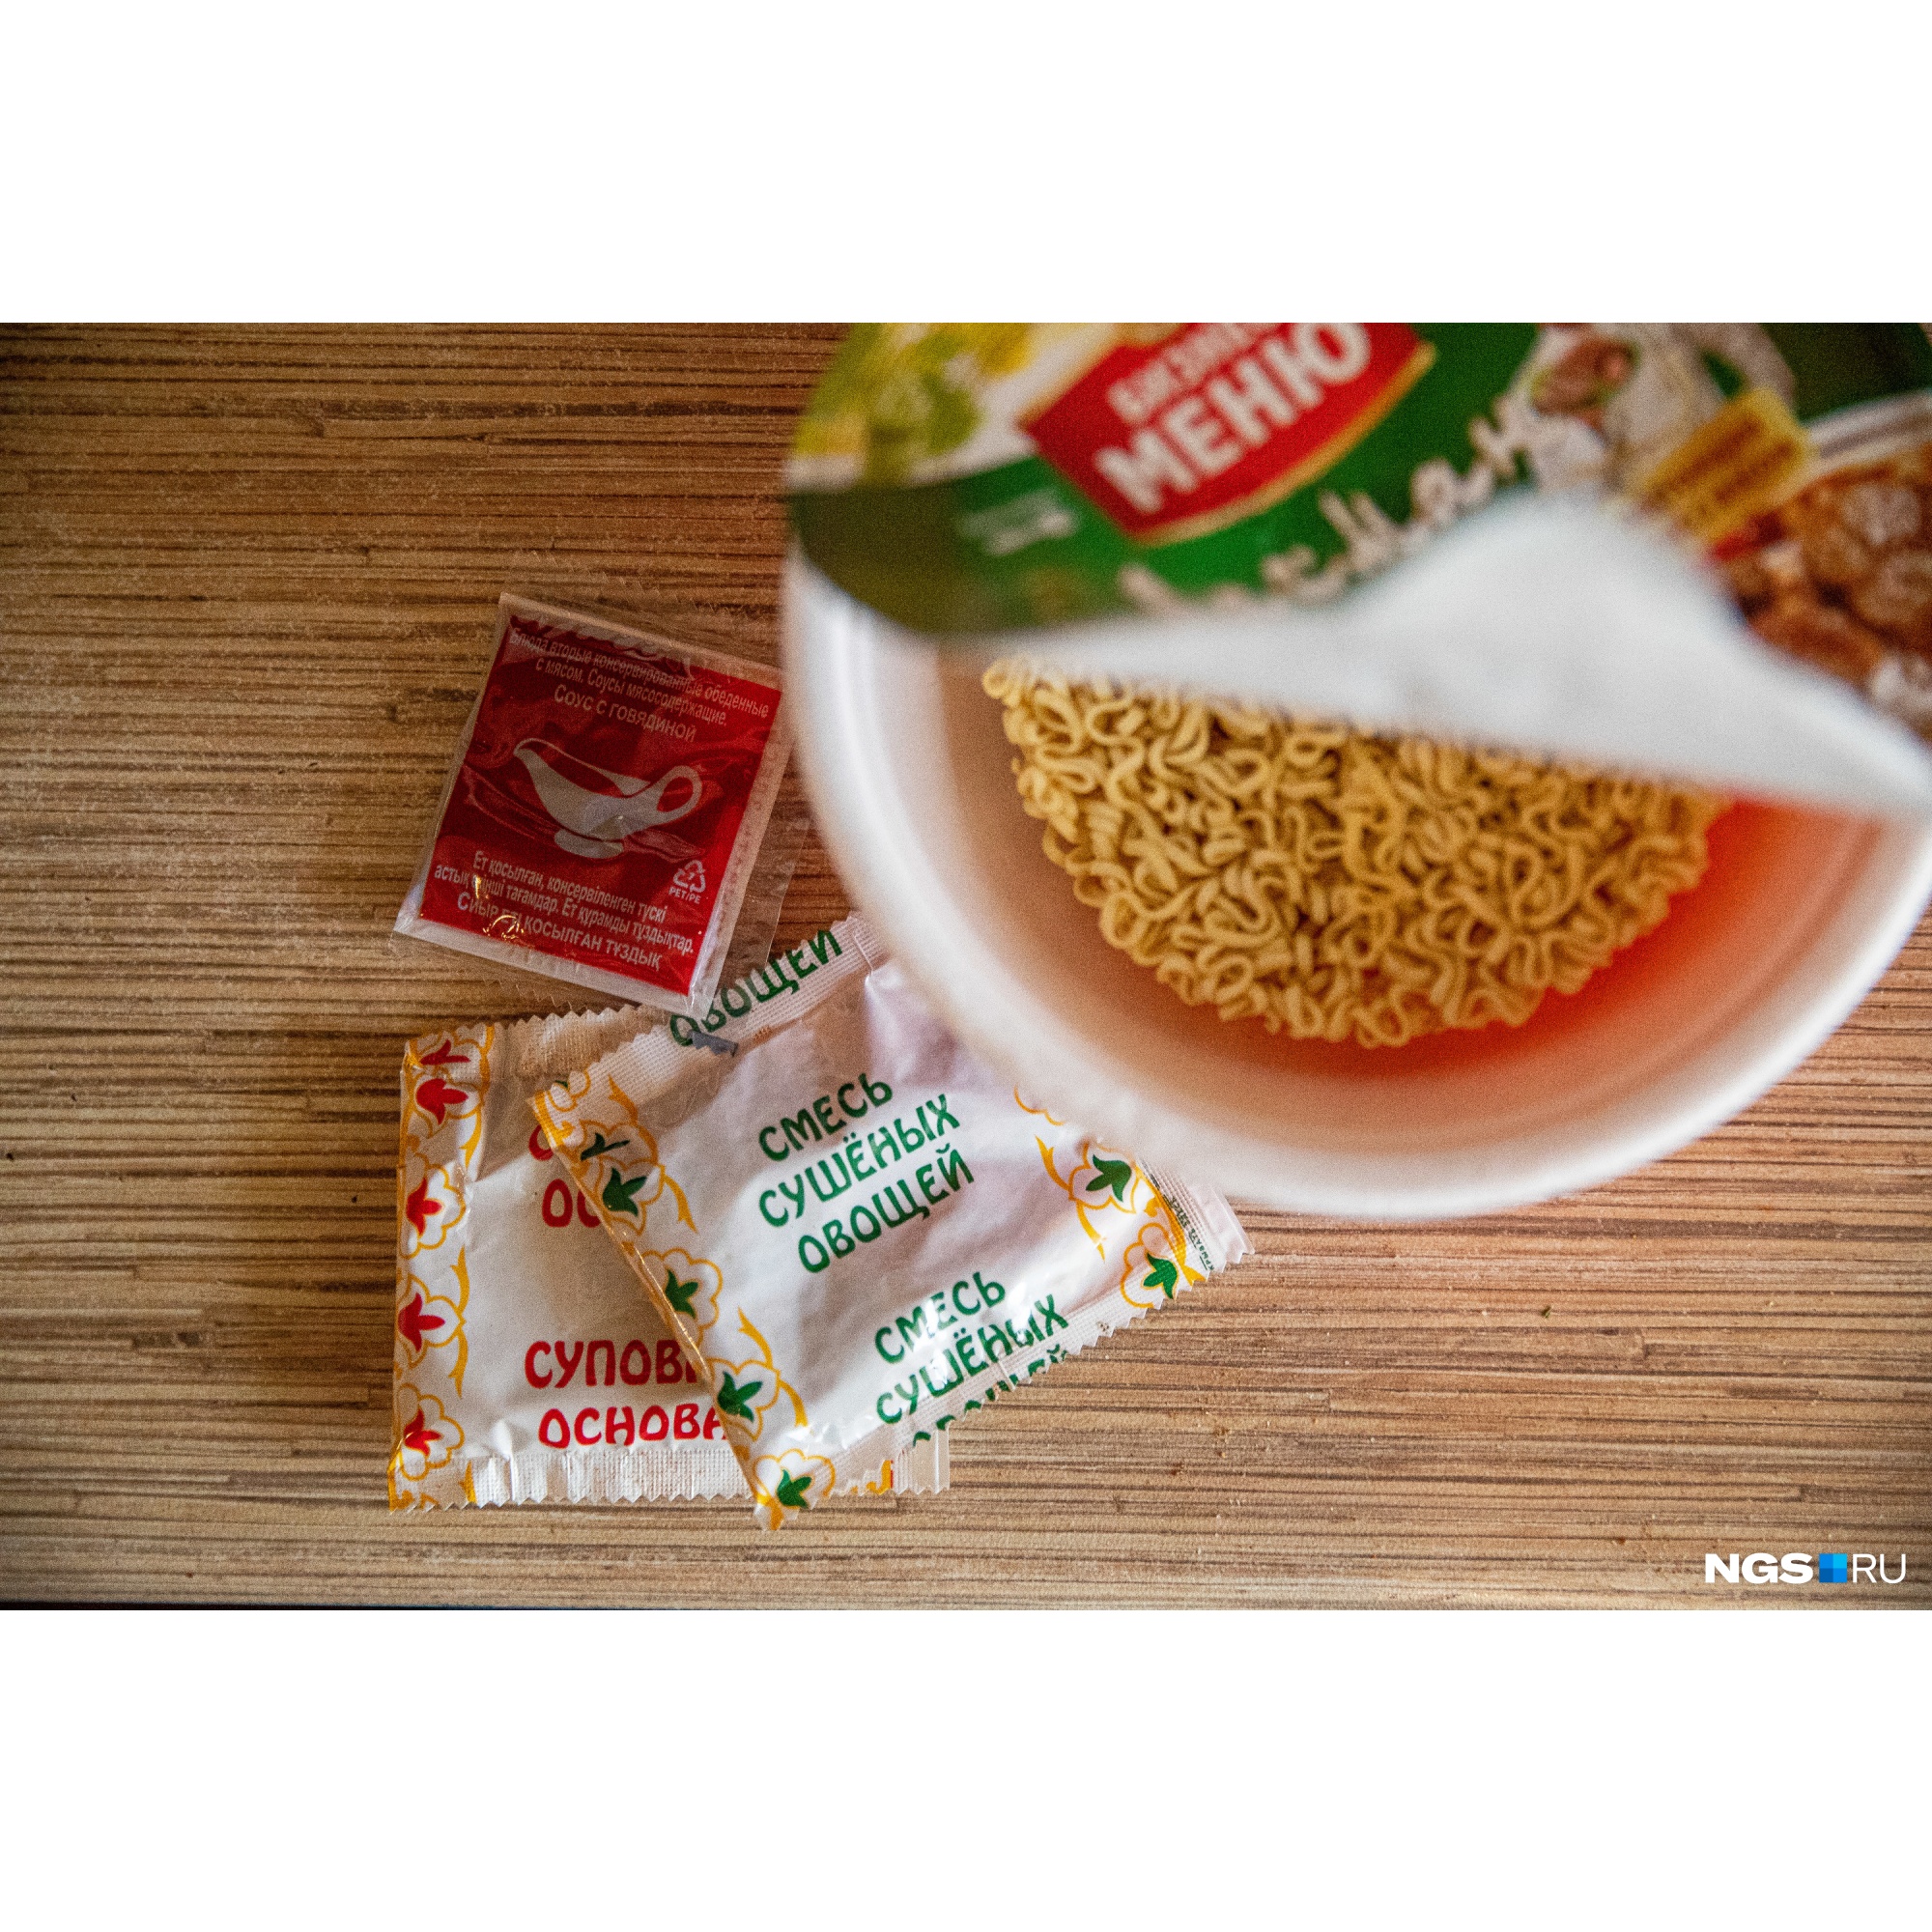 Стандартный набор упаковки — пластина лапши и два-три пакета с суповой основой, соусом и сушеными добавками